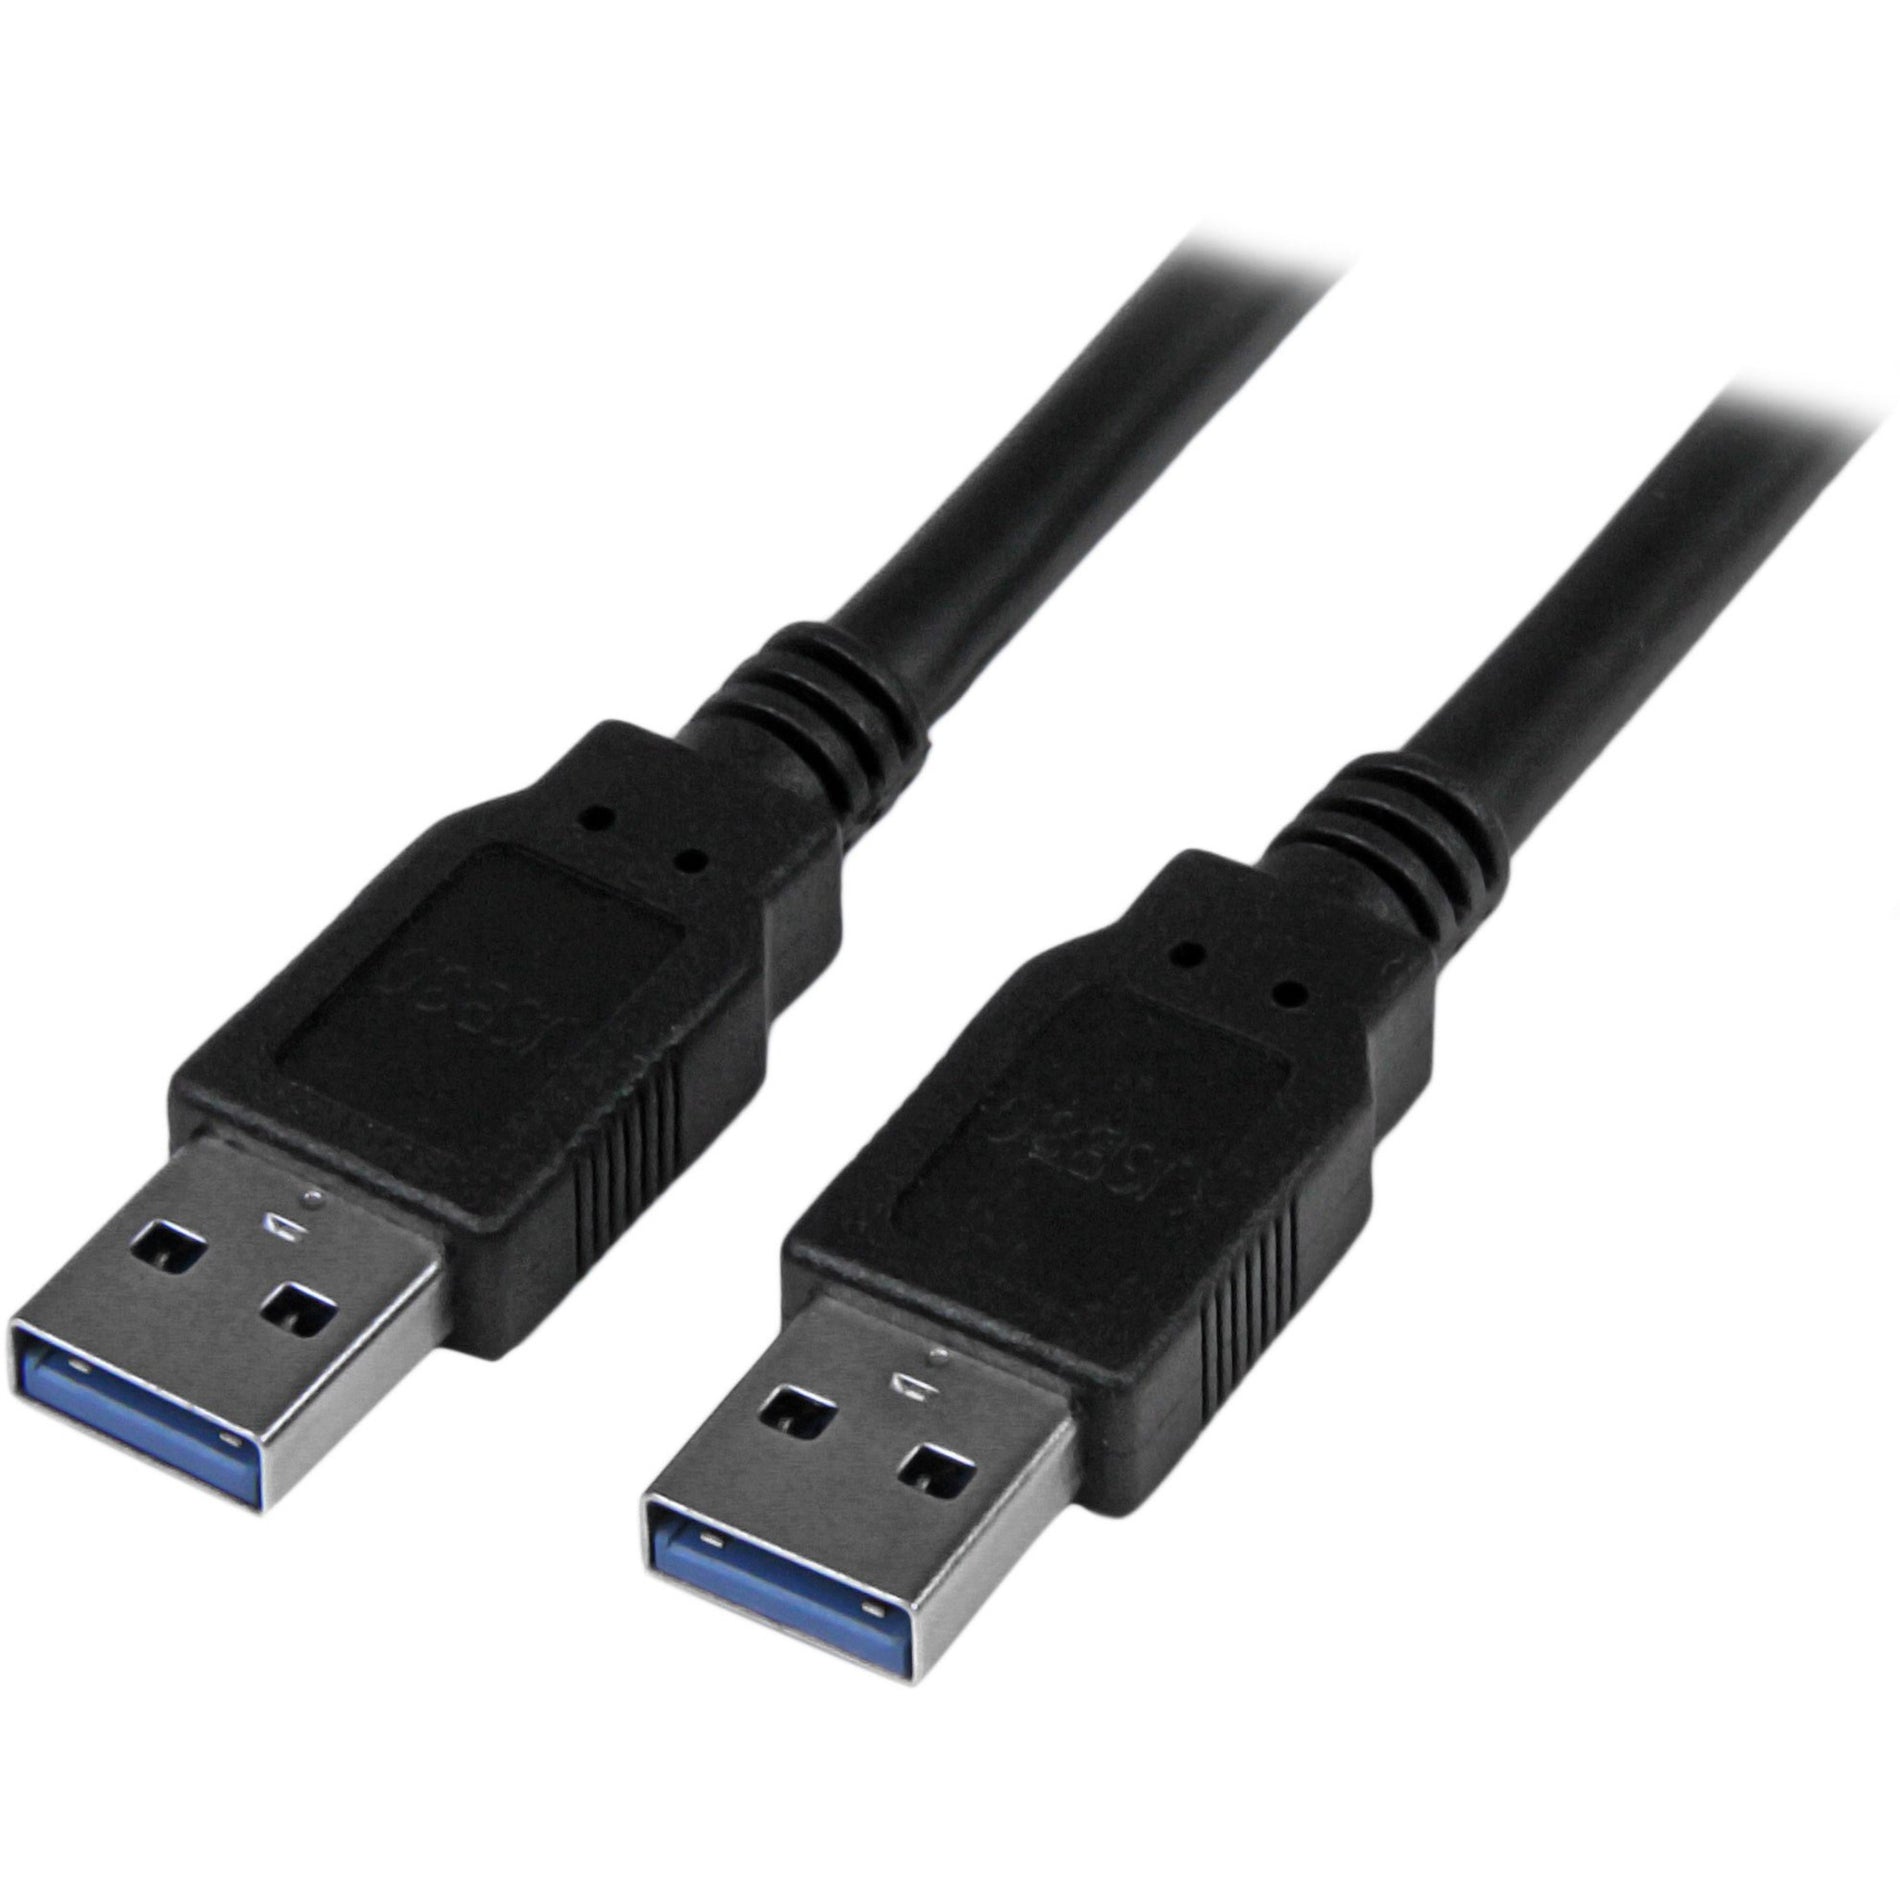 StarTech.com Câble USB 3.0 SuperSpeed noir de 6 pieds A vers A - M/M transfert de données haute vitesse protection contre les EMI garantie à vie.